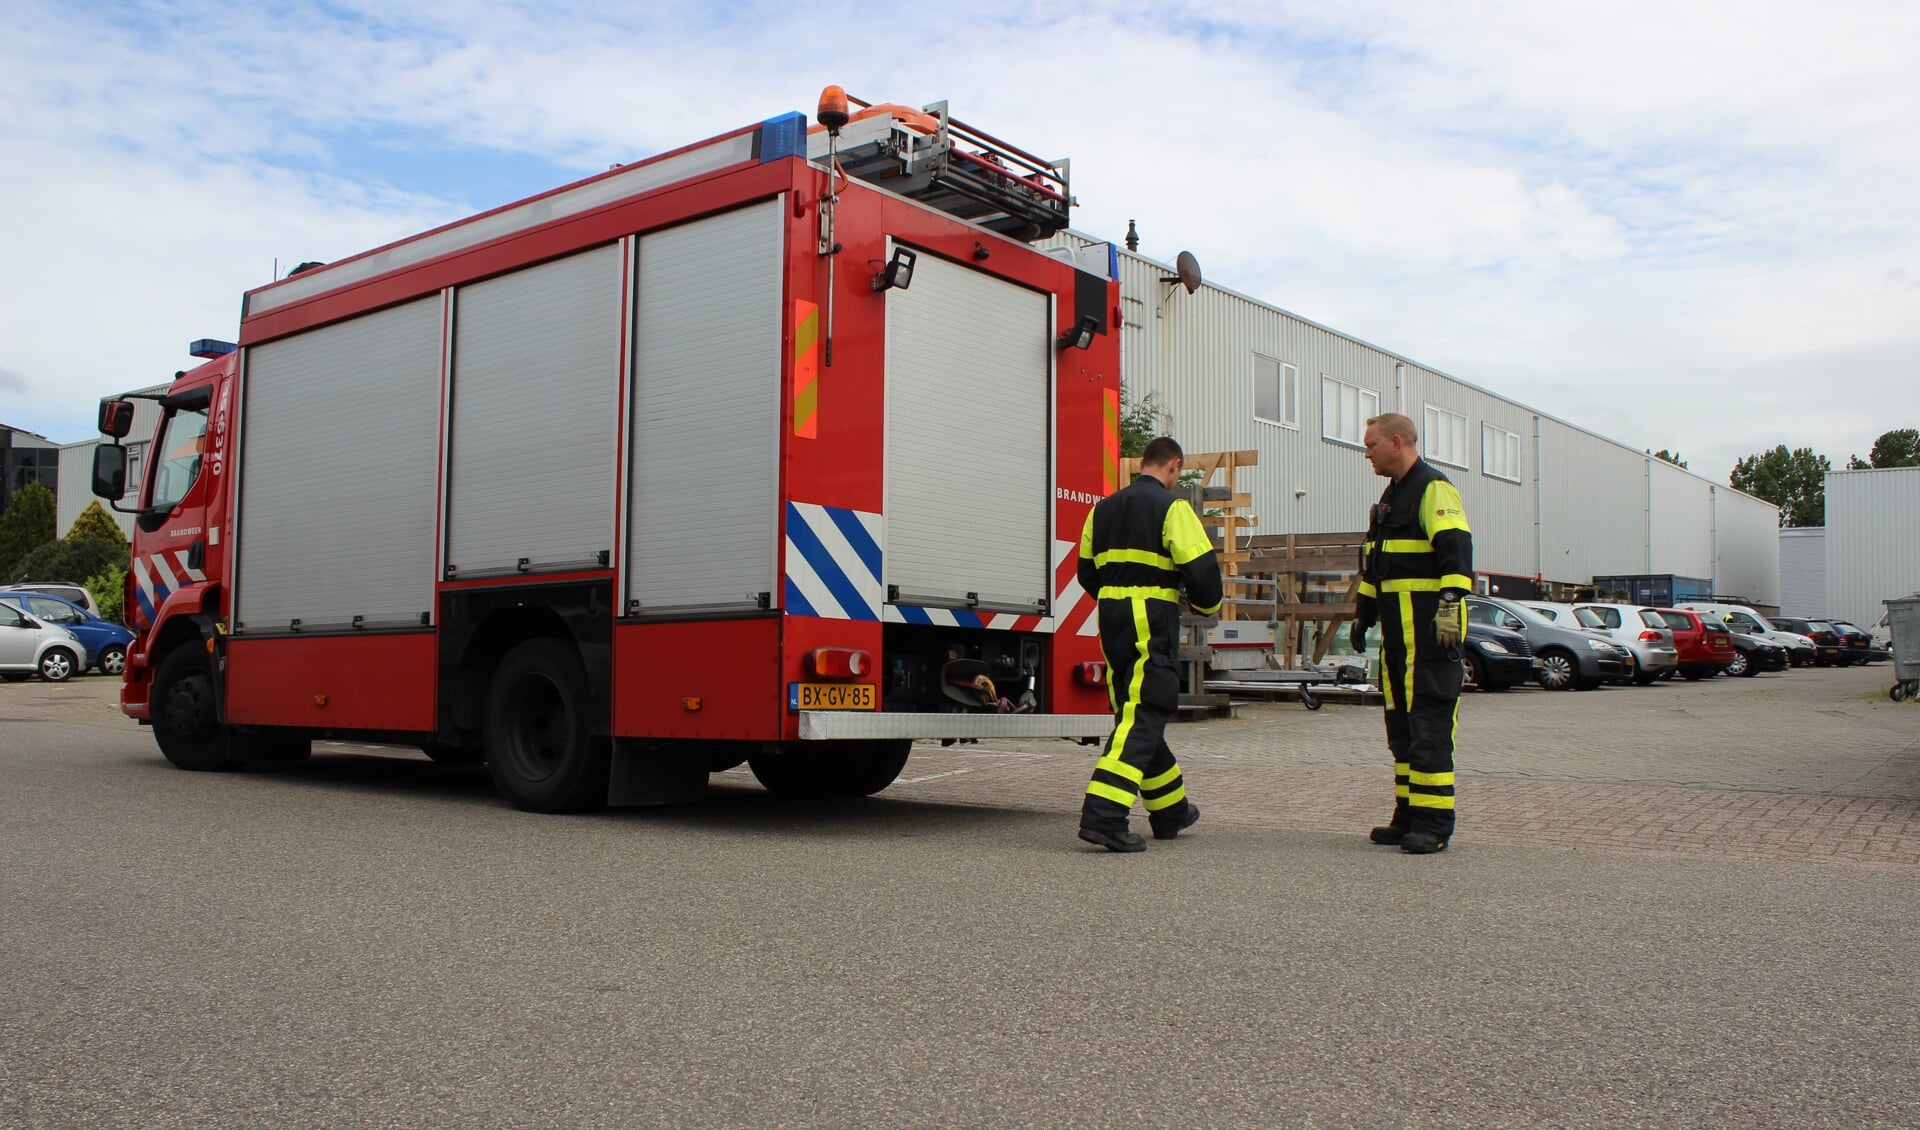 De brandweer werd opgeroepen om onder andere een deur te openen. Foto: Martijn Mastenbroek